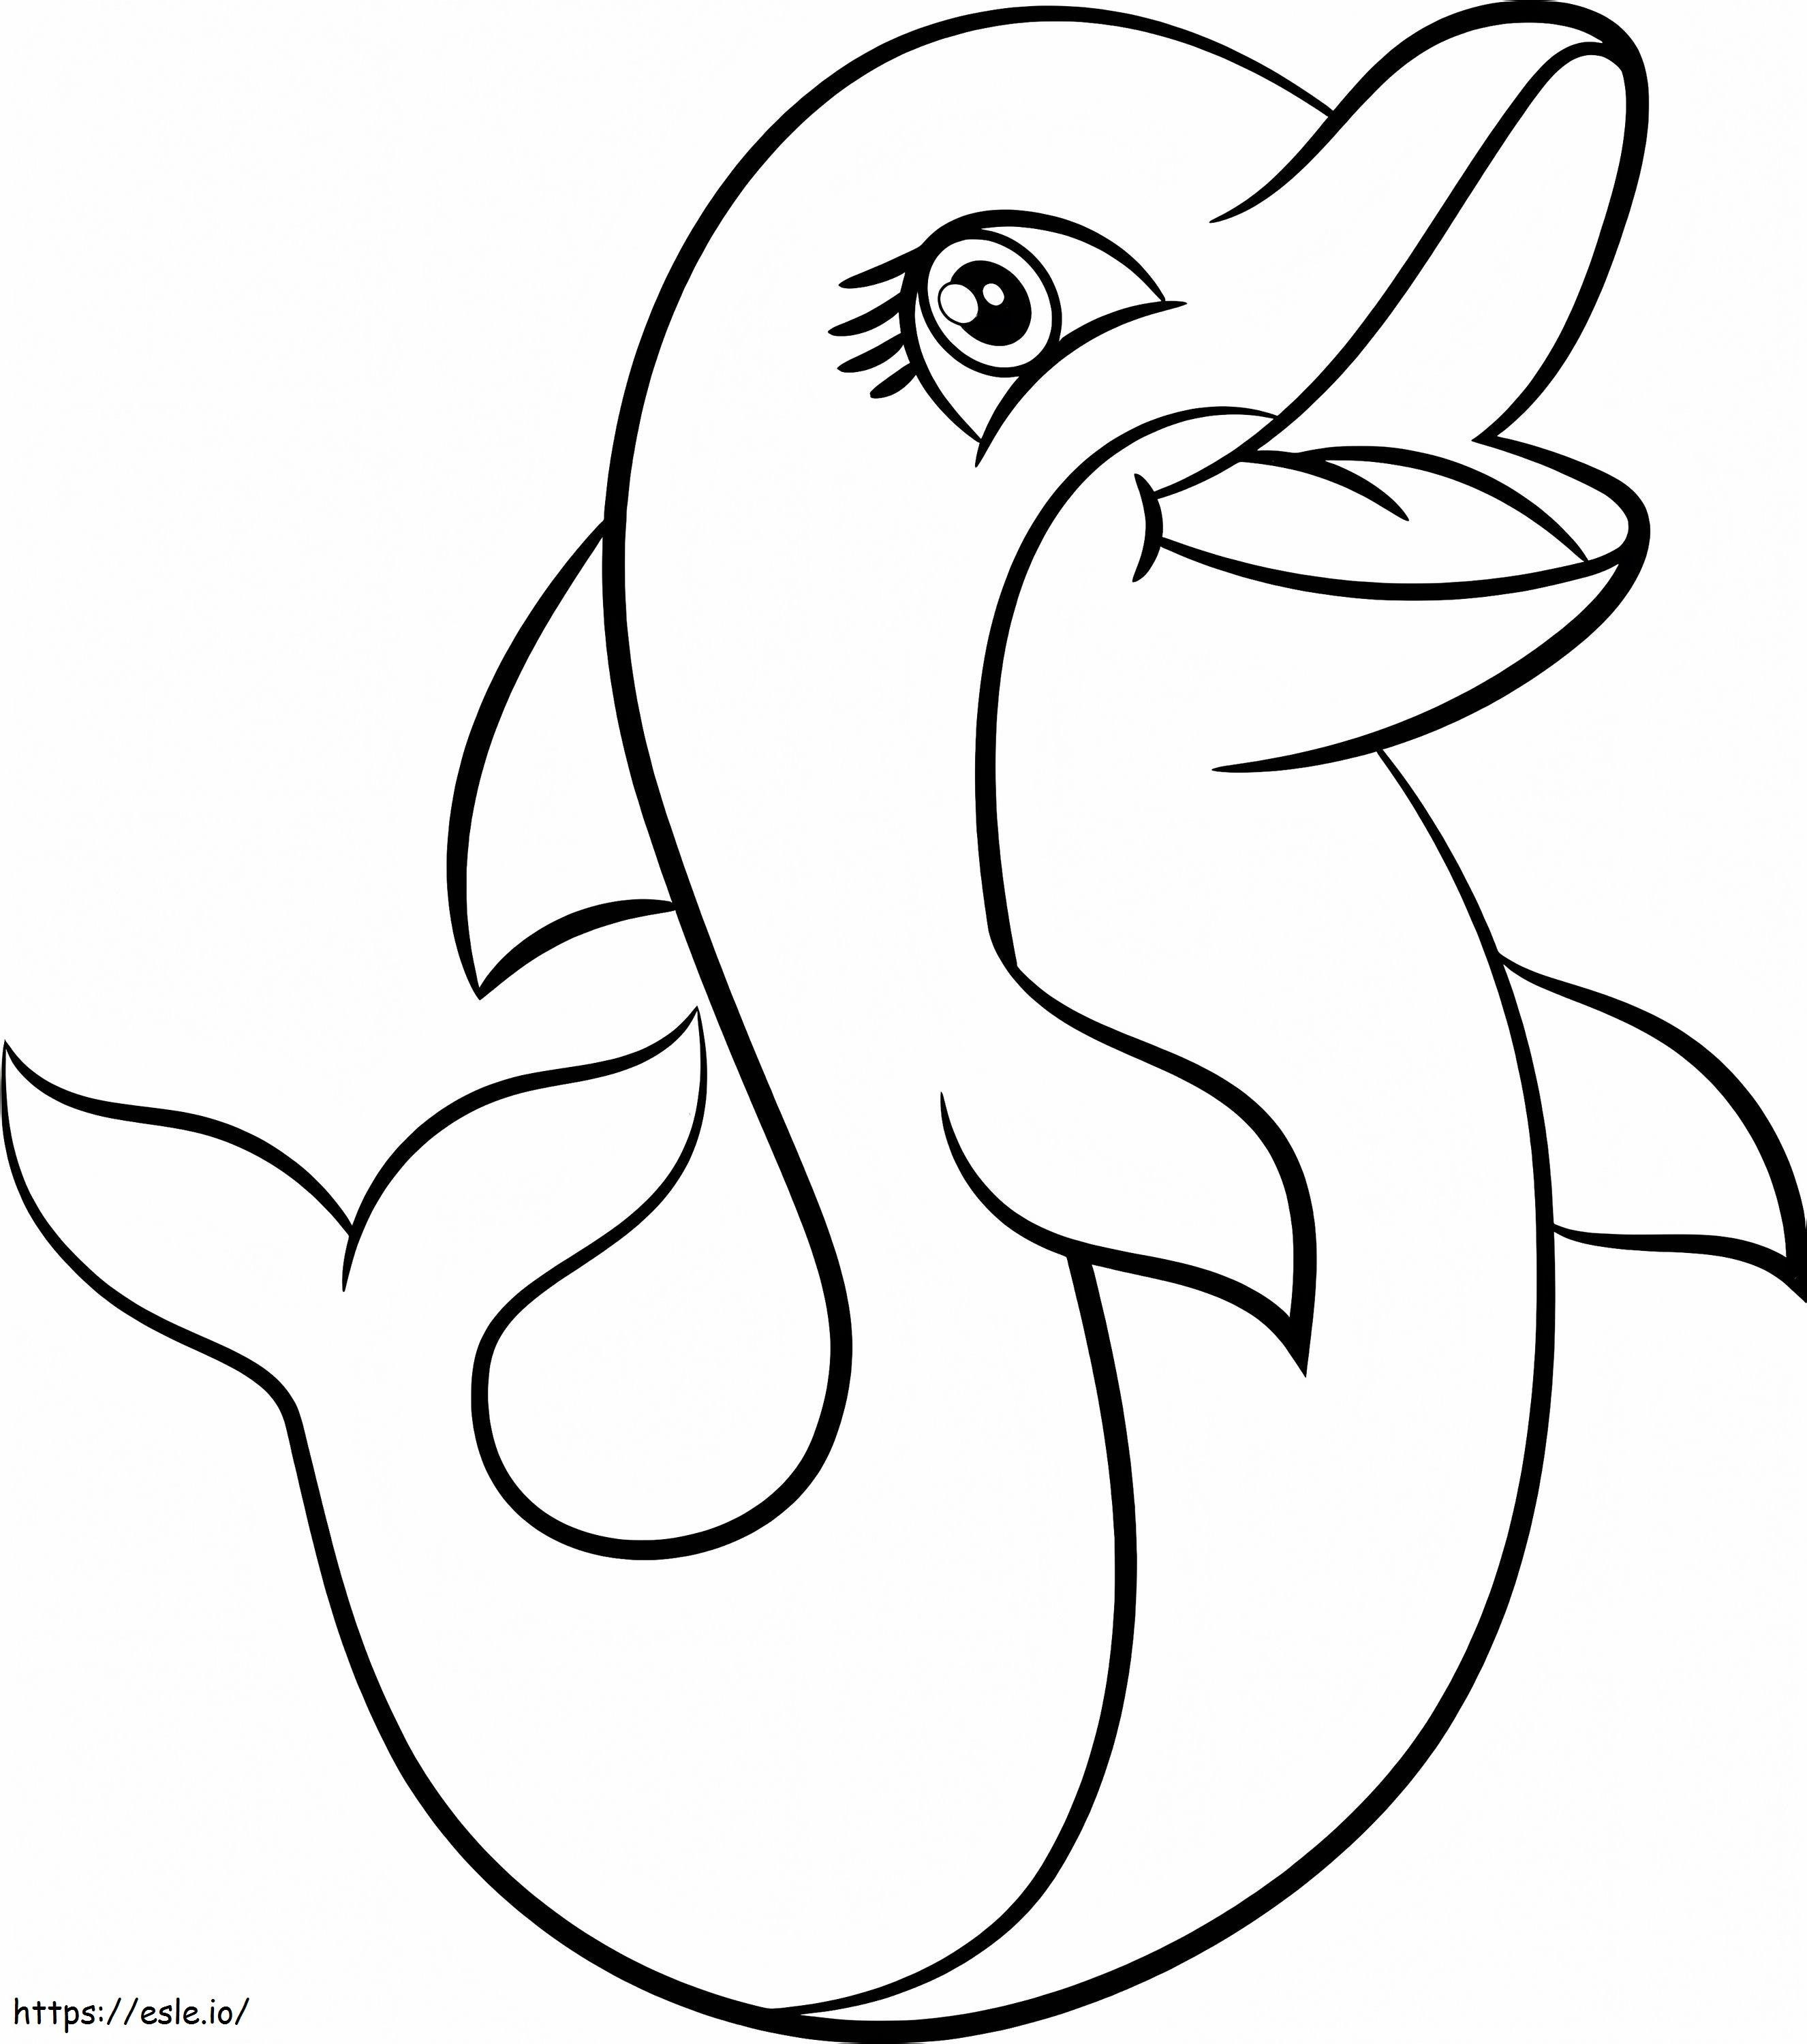 Słodki Delfin kolorowanka